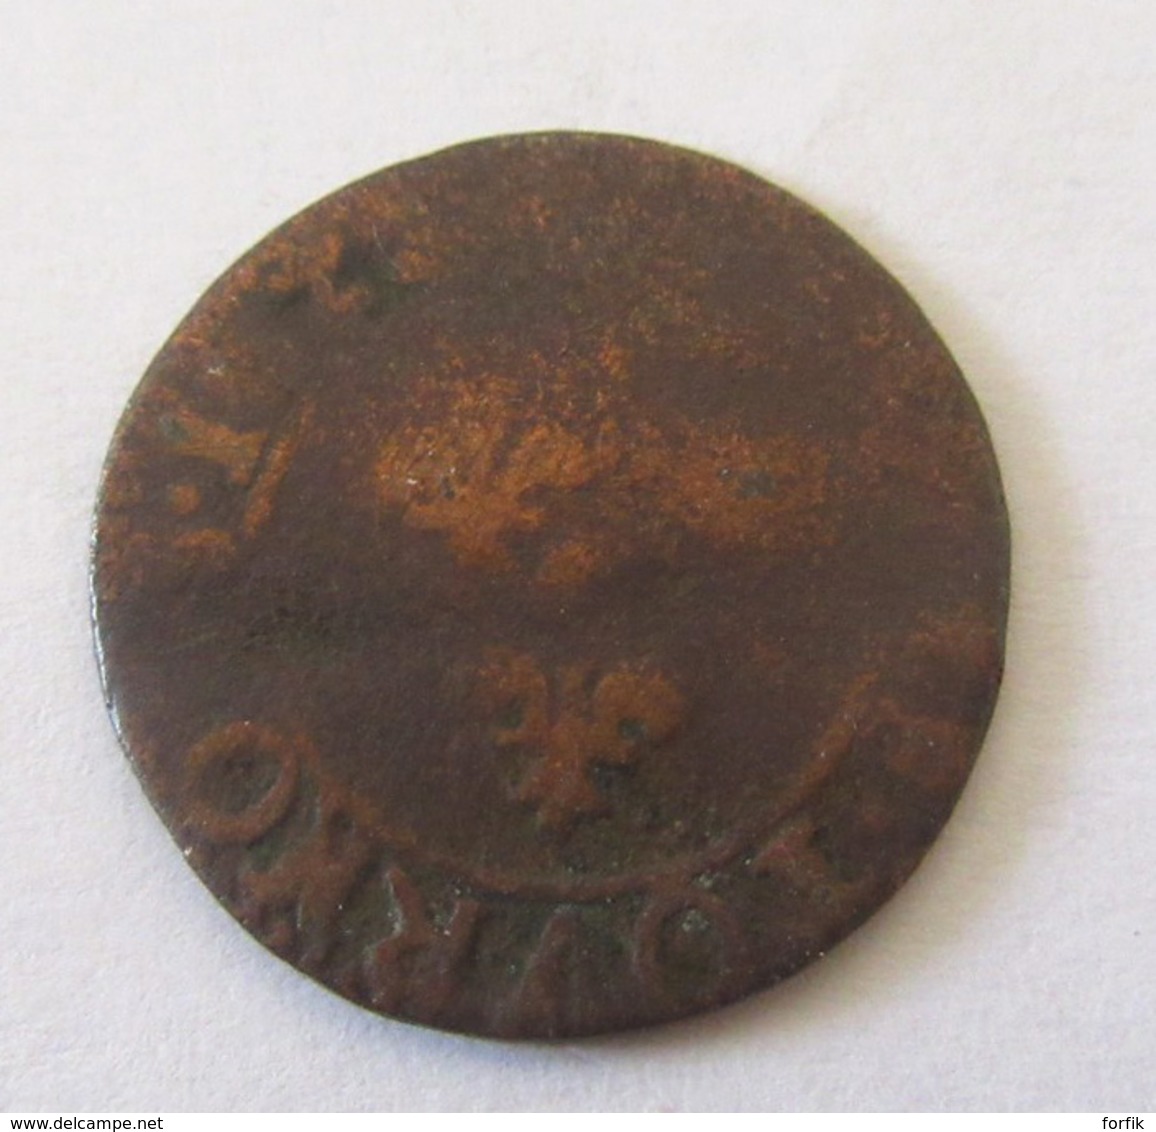 France - 3 Monnaies dont double Tournois, 12 Deniers Louis XVI (1792 ?) D. (Dijon), 5 centimes Dupré AN 7 BB